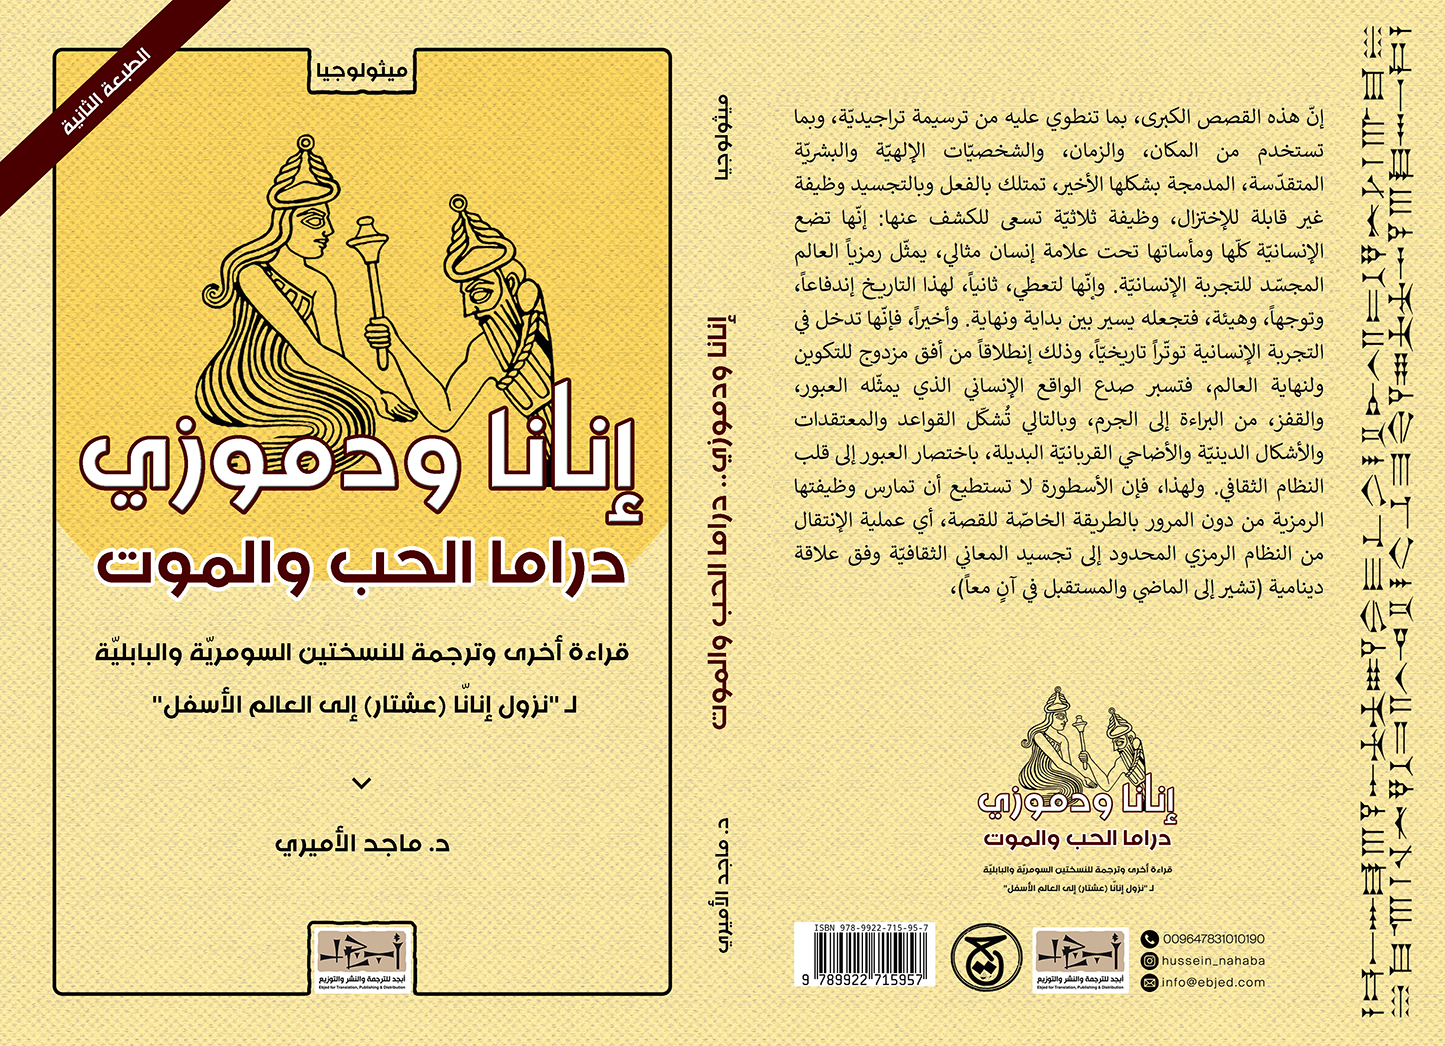 عنوان الكتاب: ''إنانّا ودُموزي'' دراما الحب والموت تأليف: د. ماجد الأميري التصنيف: ميثولوجيا